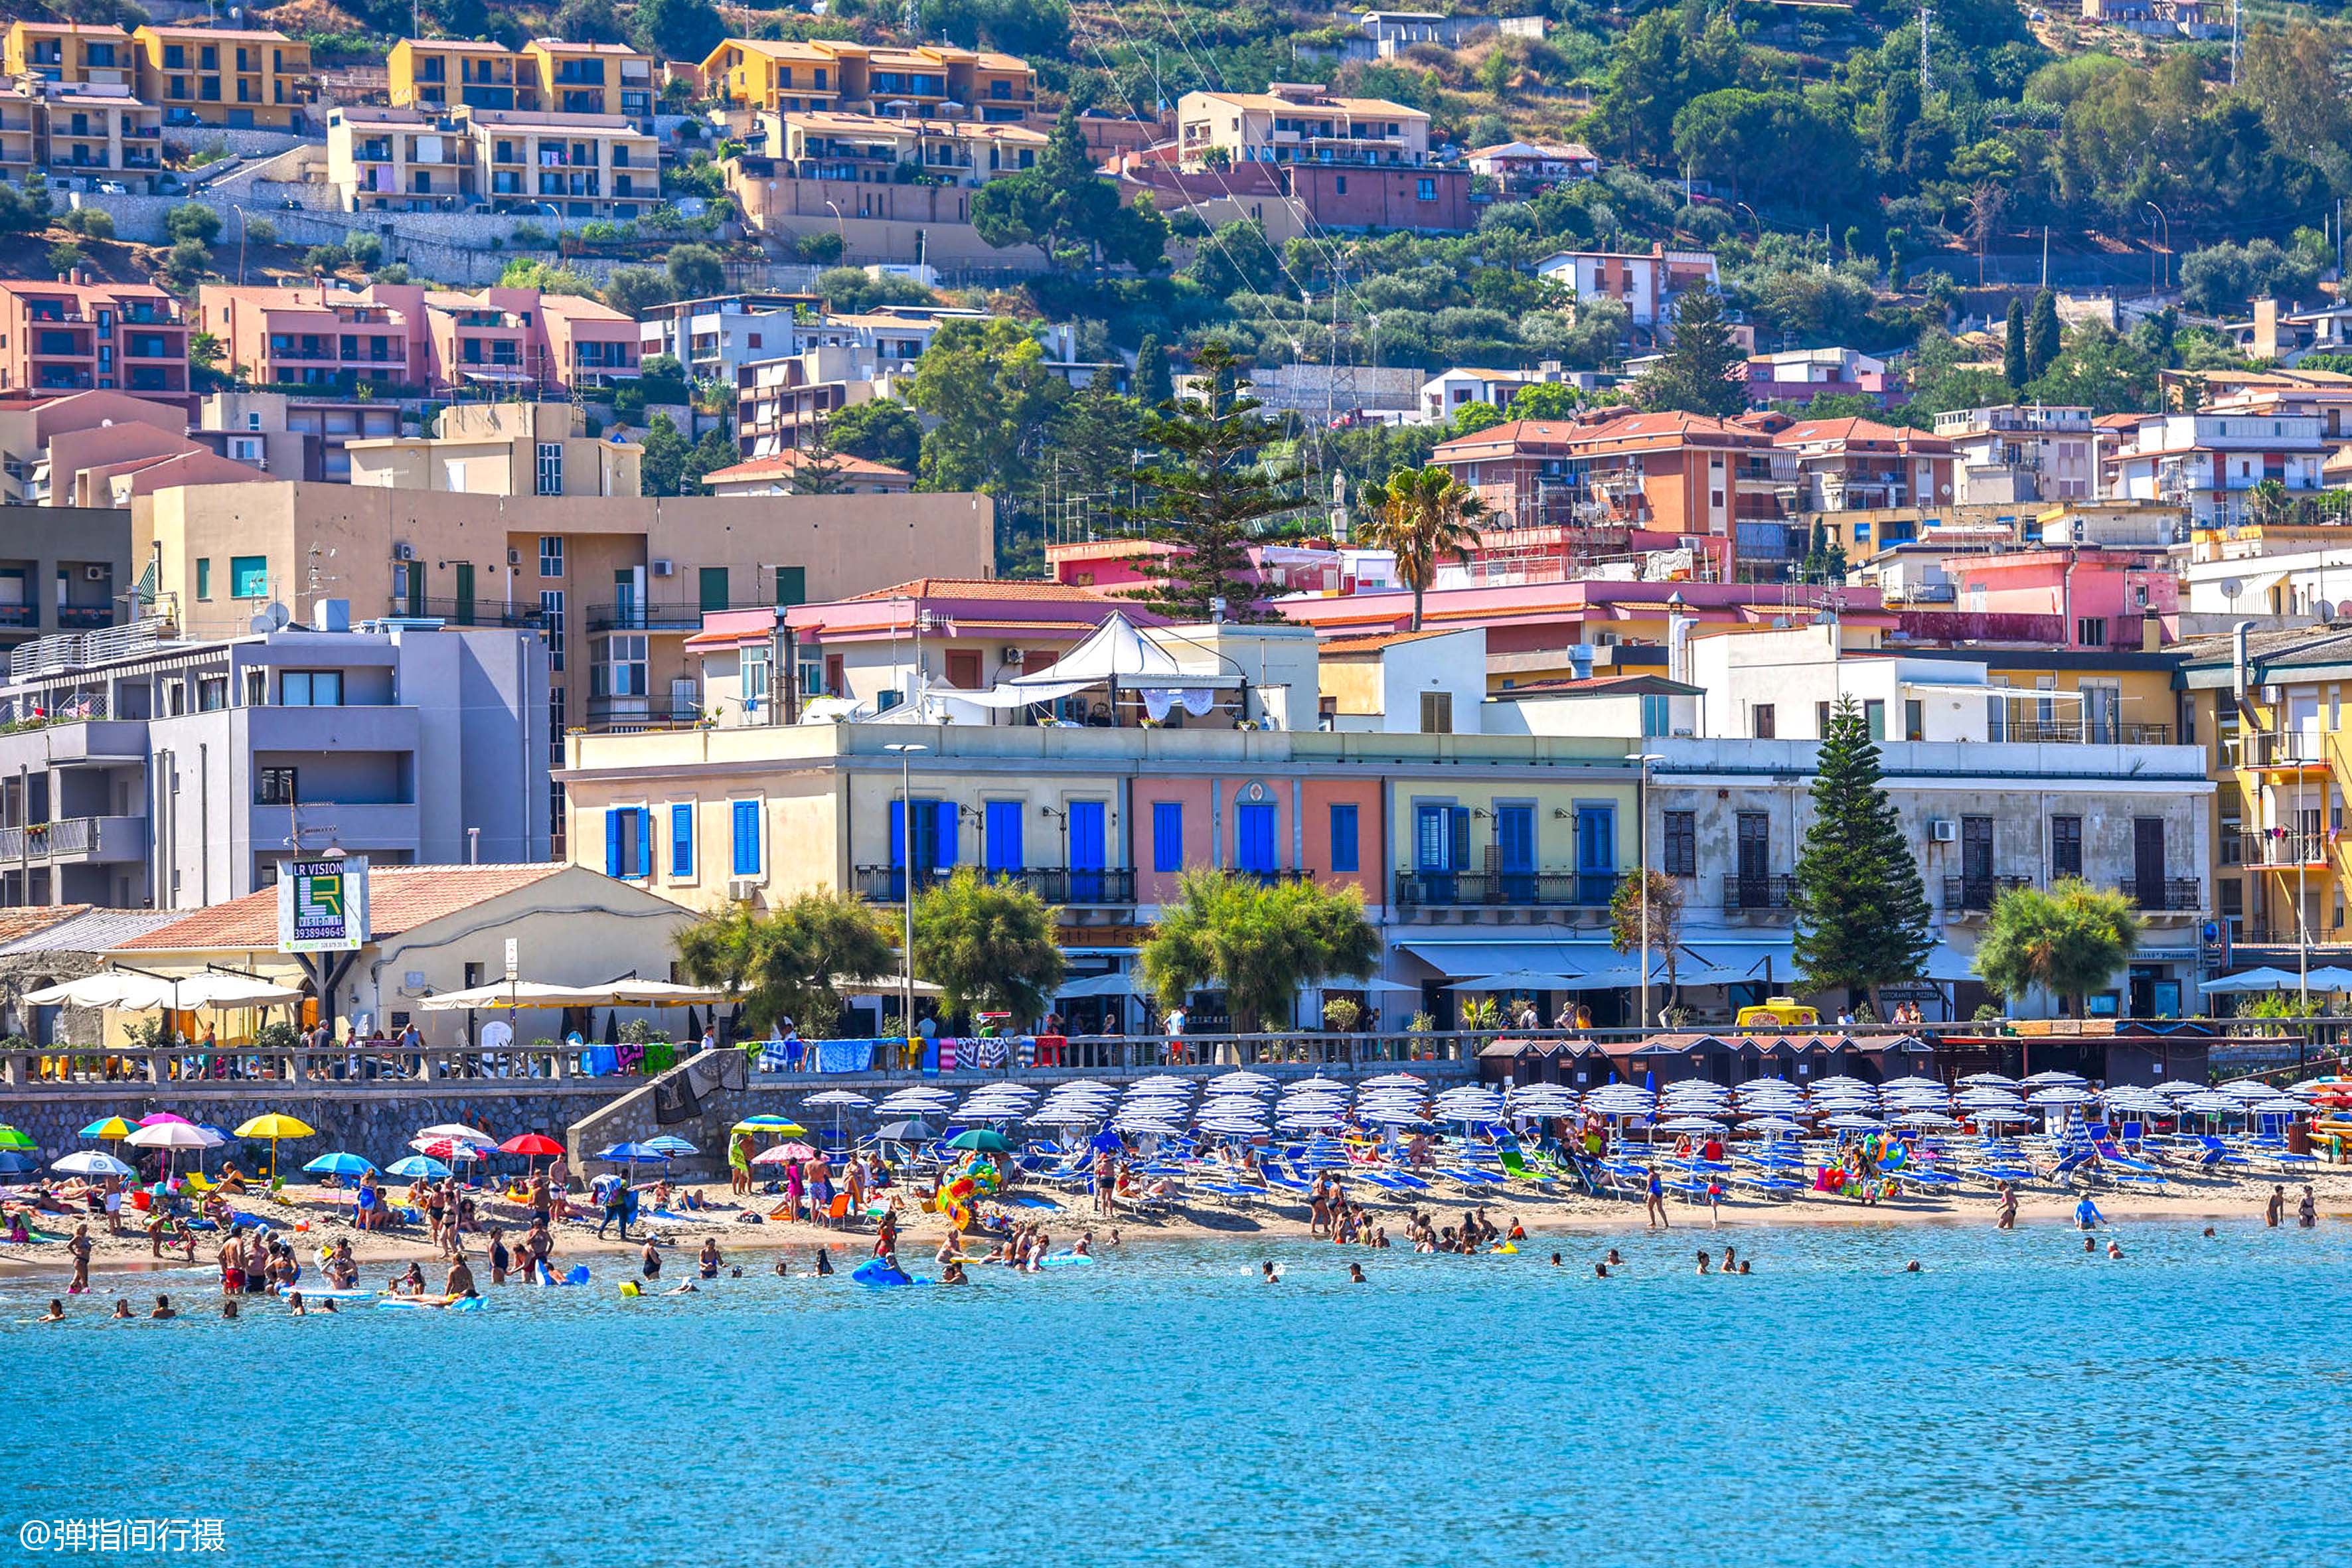 意大利千年小城面朝大海红蓝相映是西西里岛最美度假胜地